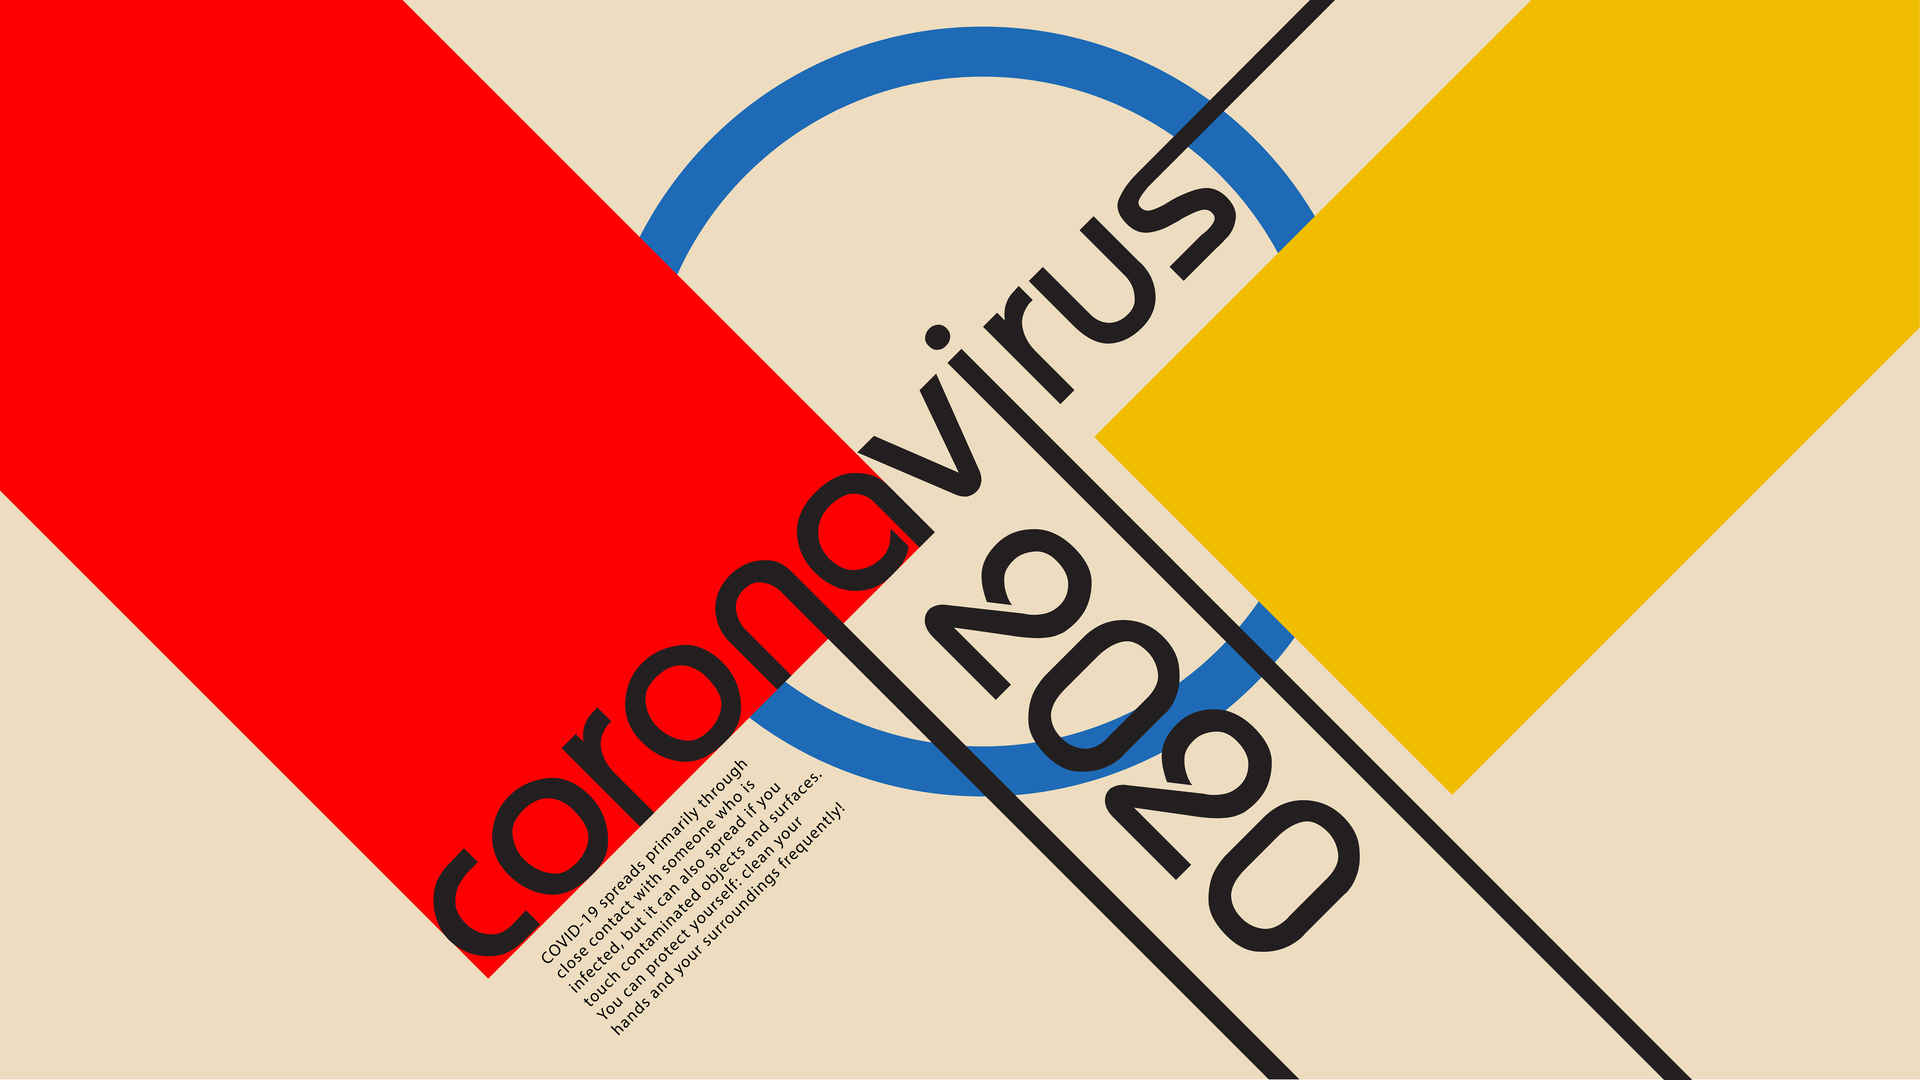 Coronary virus Covid-19 wallpaper